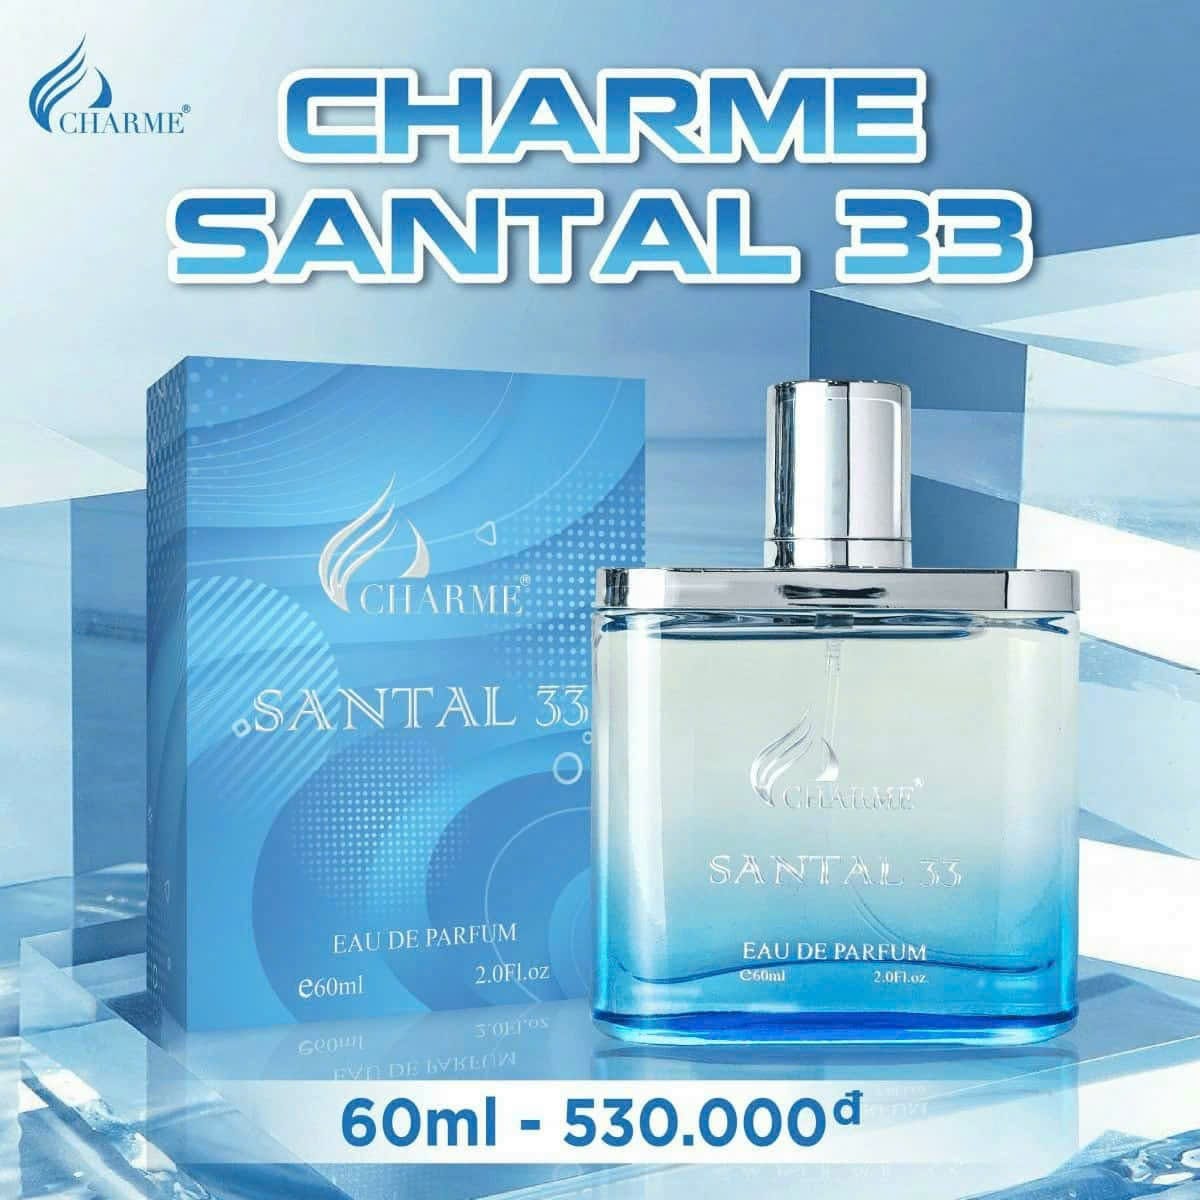 Mùi hương Charme Santal 33 đặc biệt bởi sự tối giản của mình